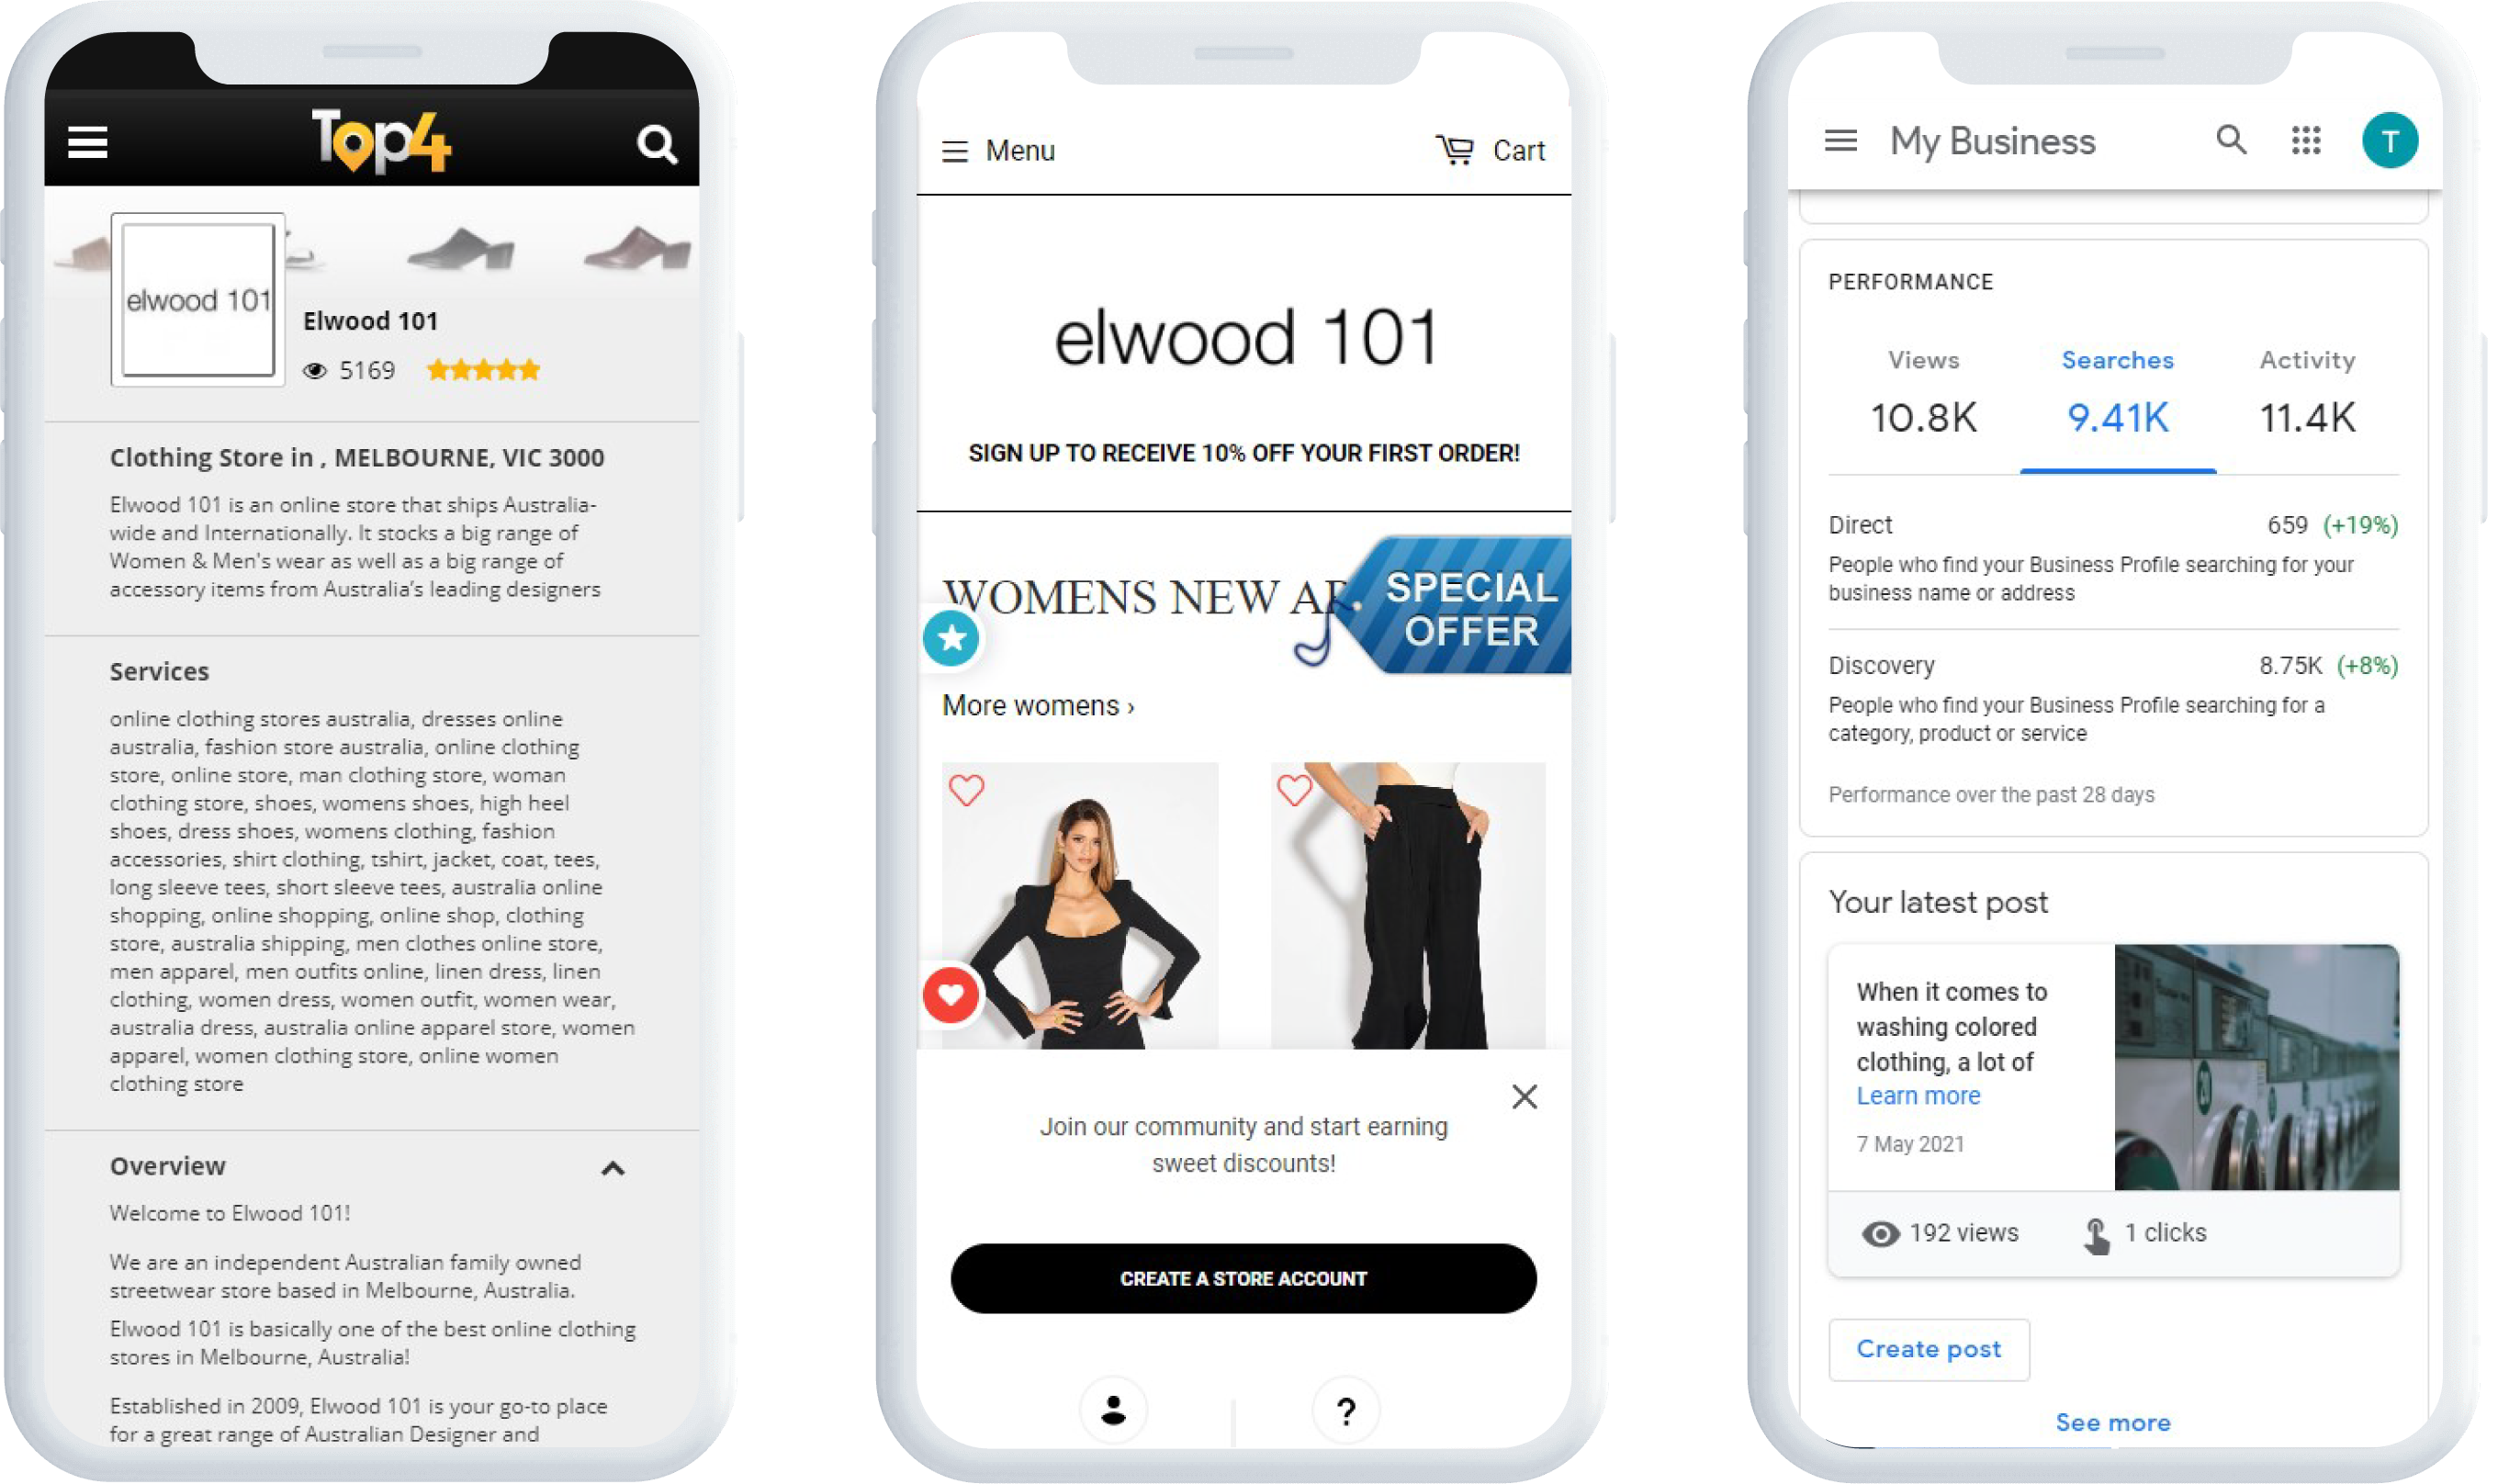 Digital Marketing for Fashion – Elwood 101